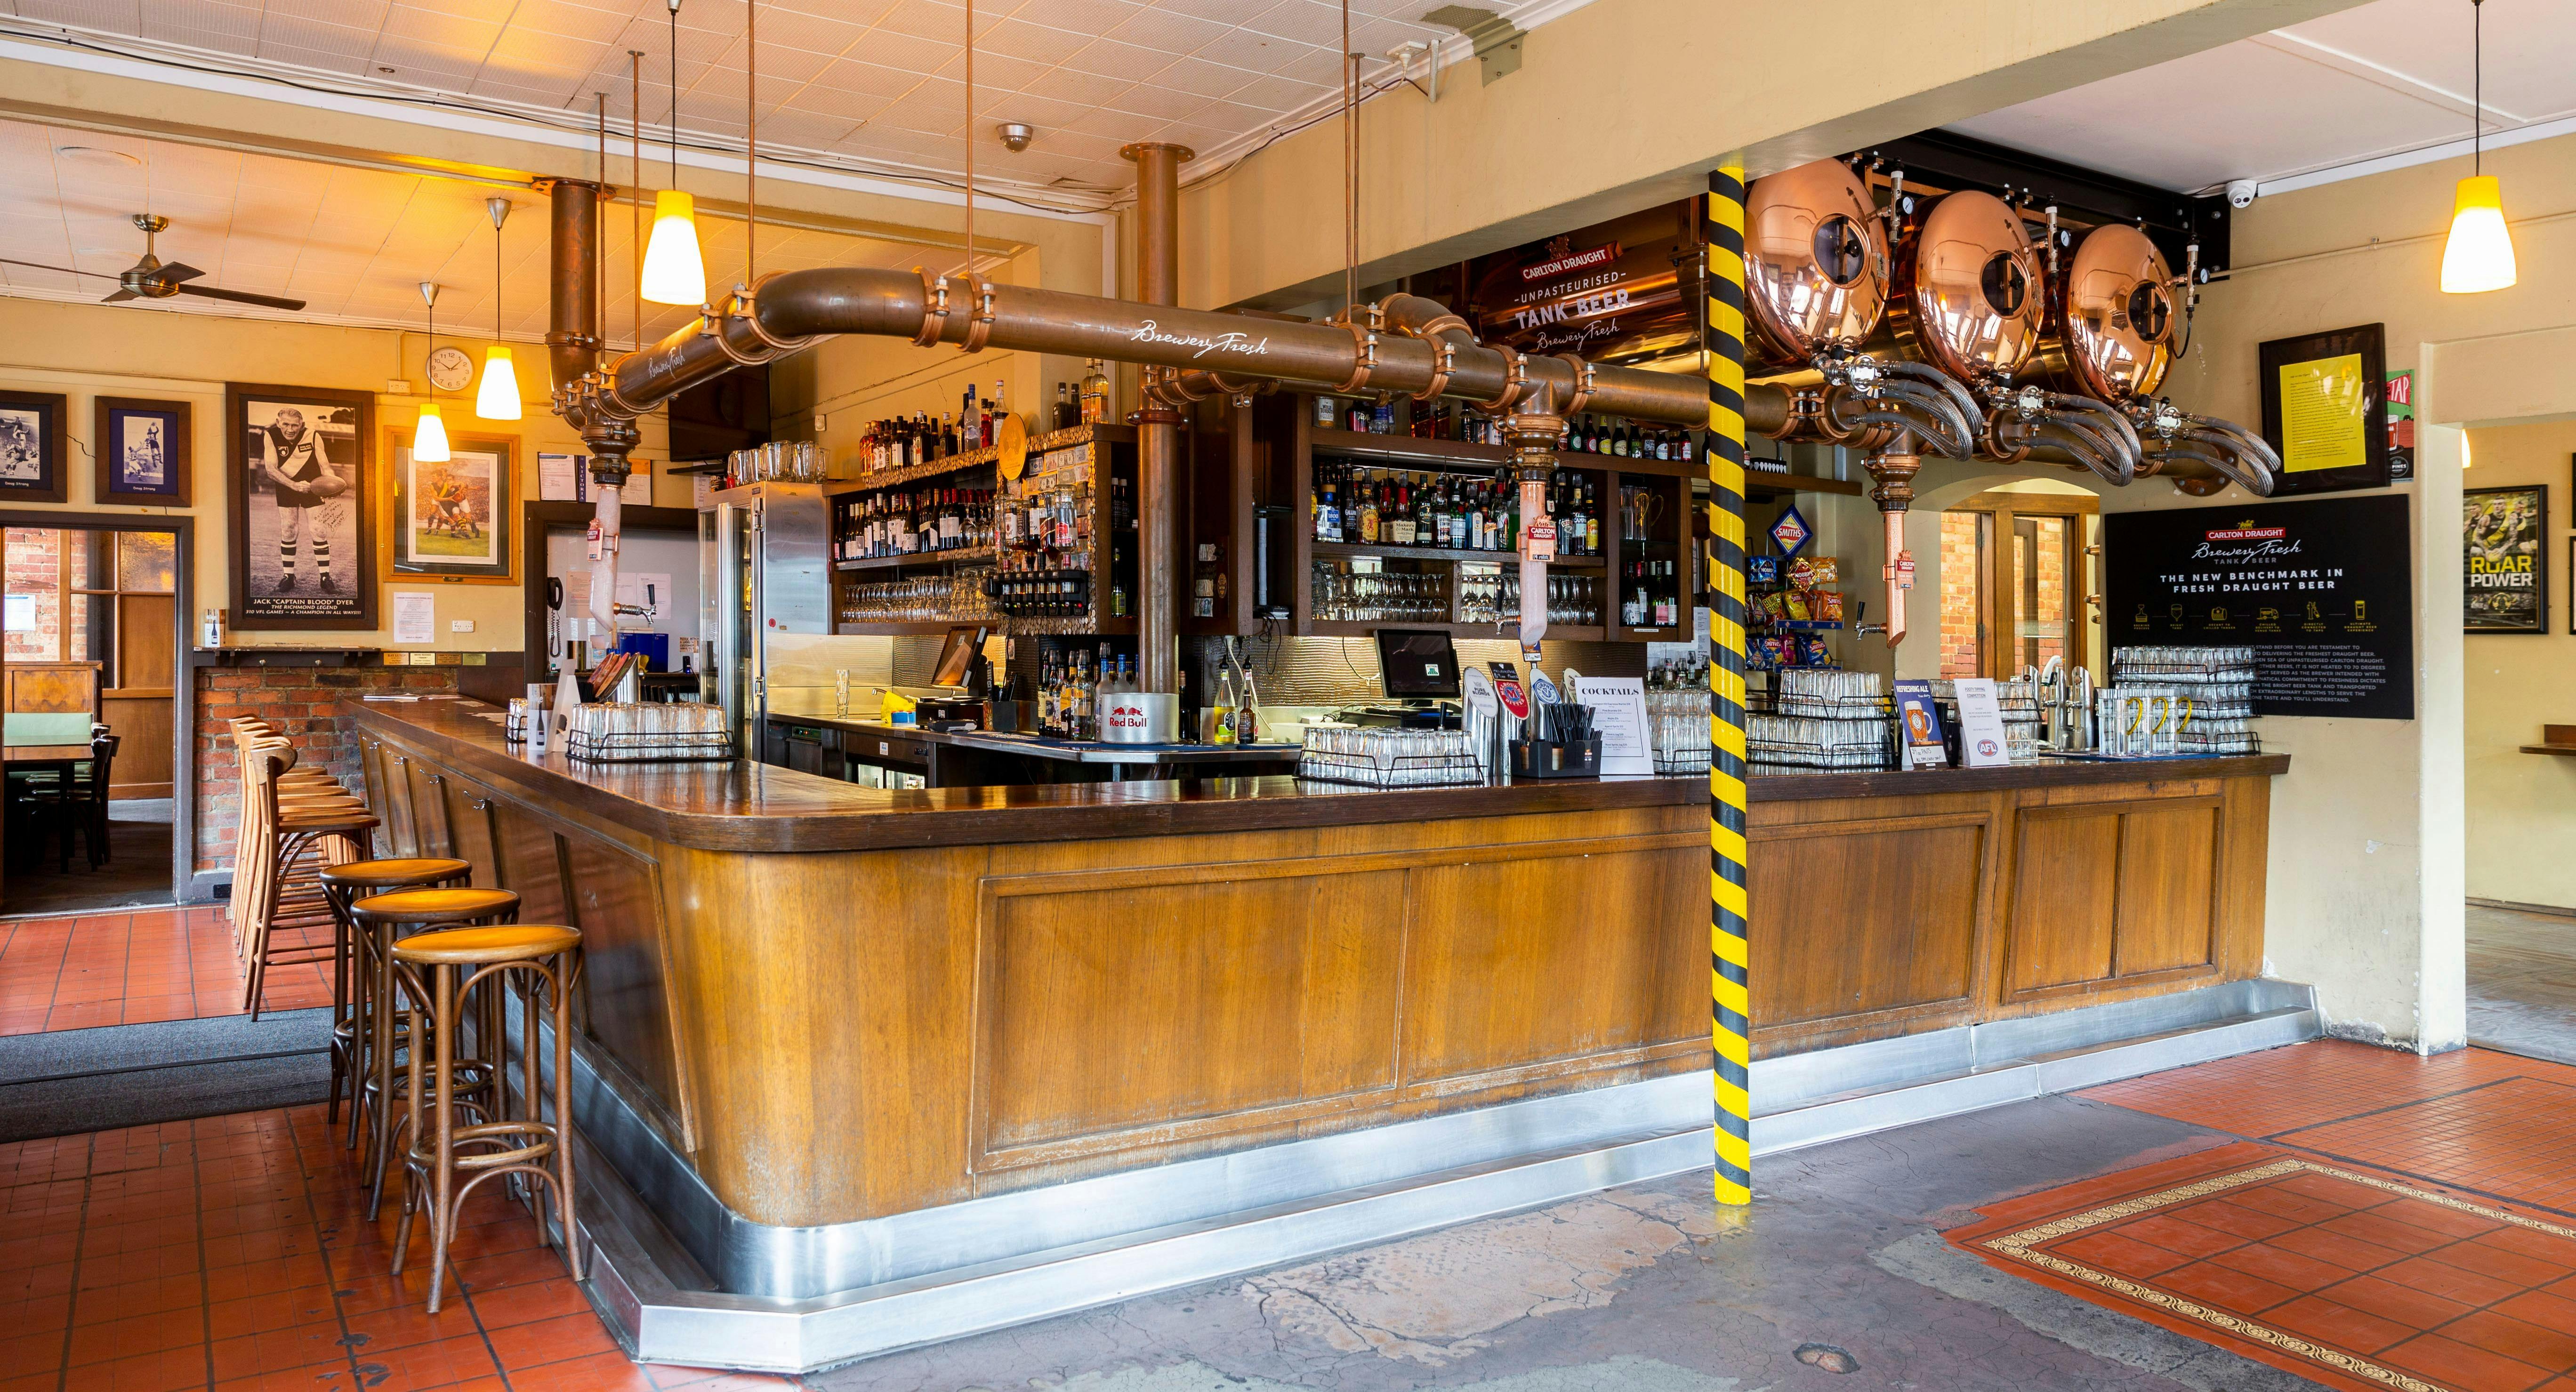 Photo of restaurant London Tavern Hotel - Richmond in Richmond, Melbourne